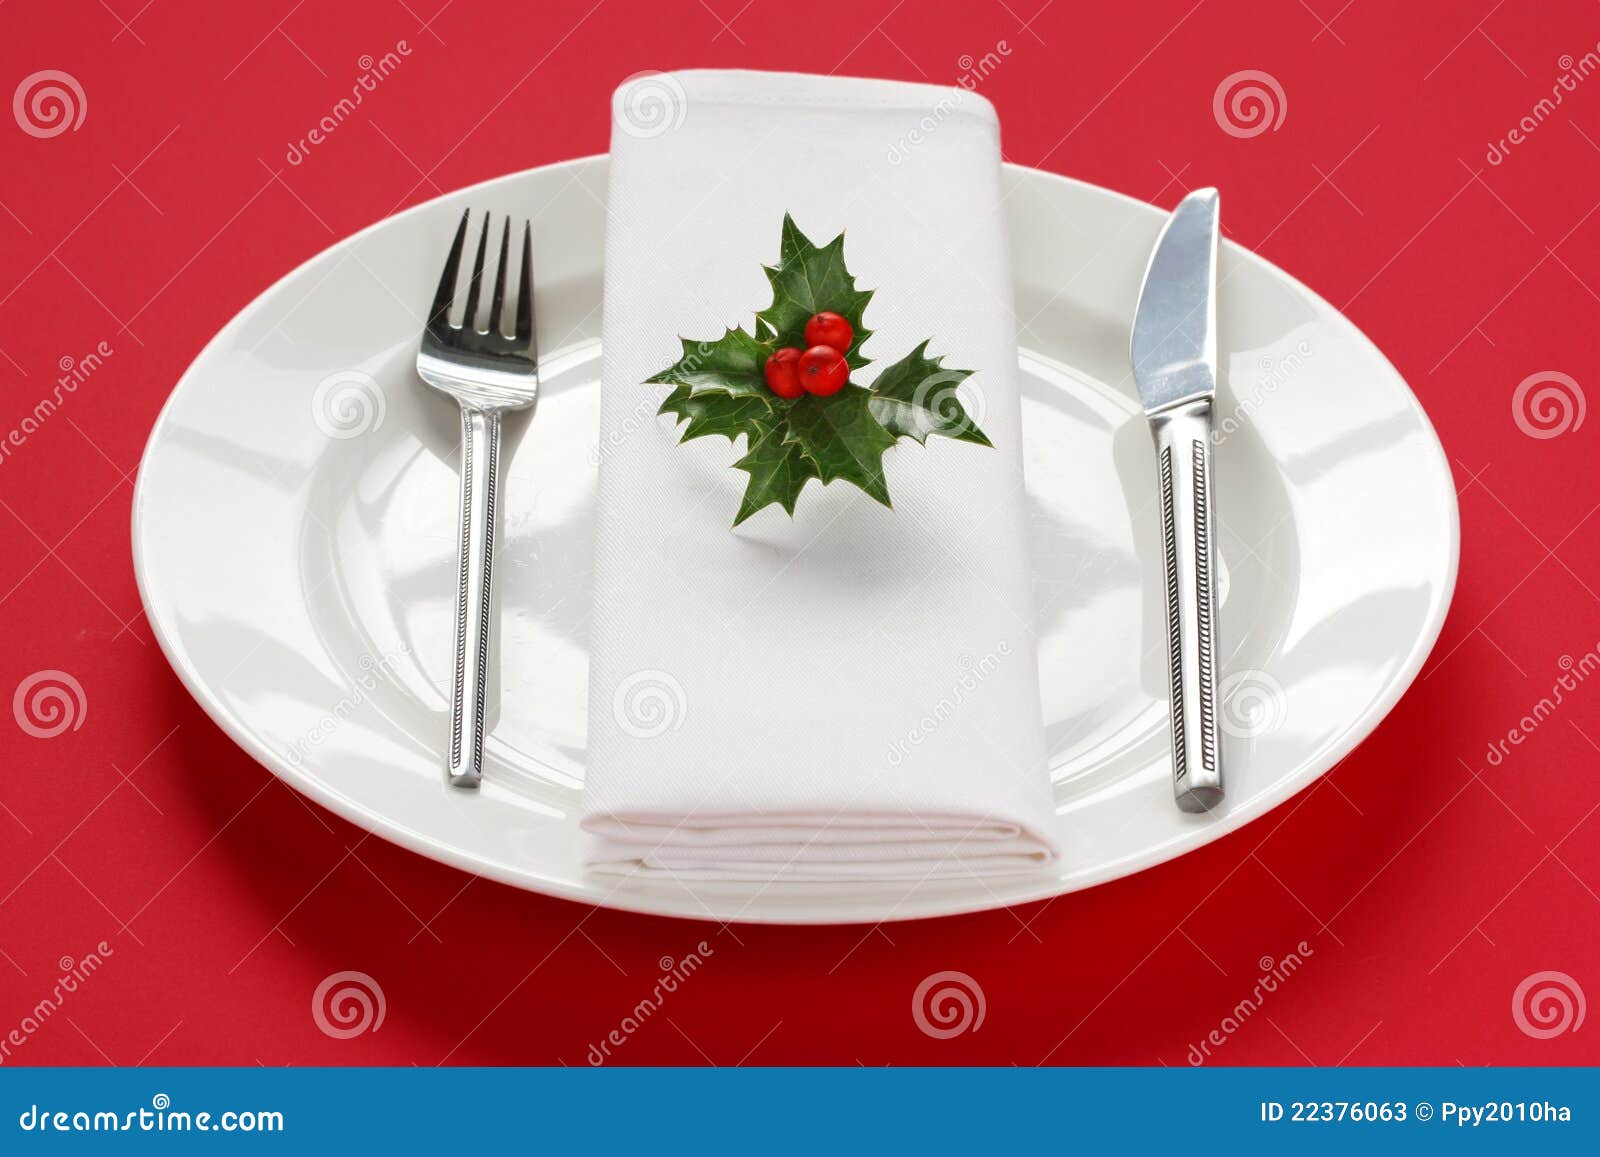 clipart christmas dinner table - photo #4